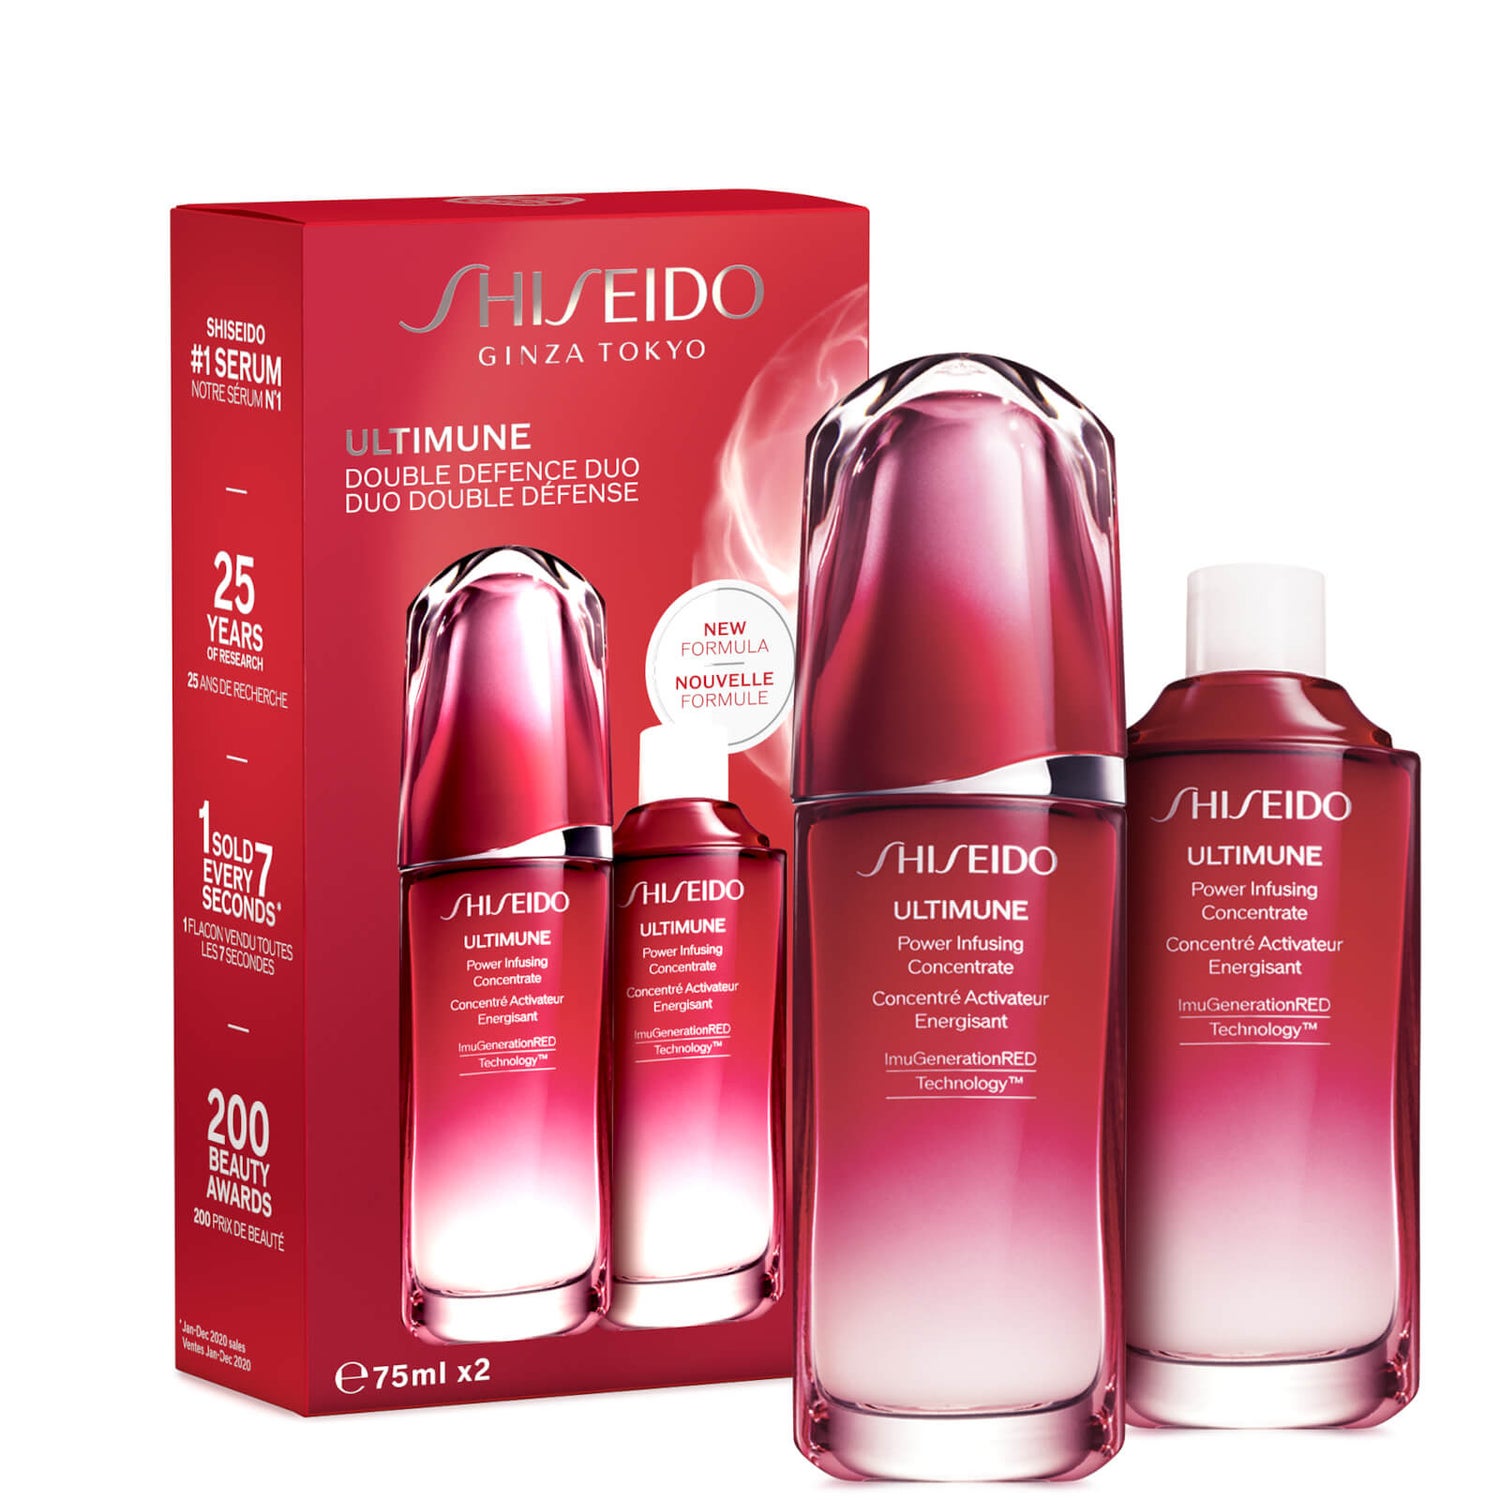 Shiseido Ultimune 75ml Refill Value Set (värde 200,00 kr)